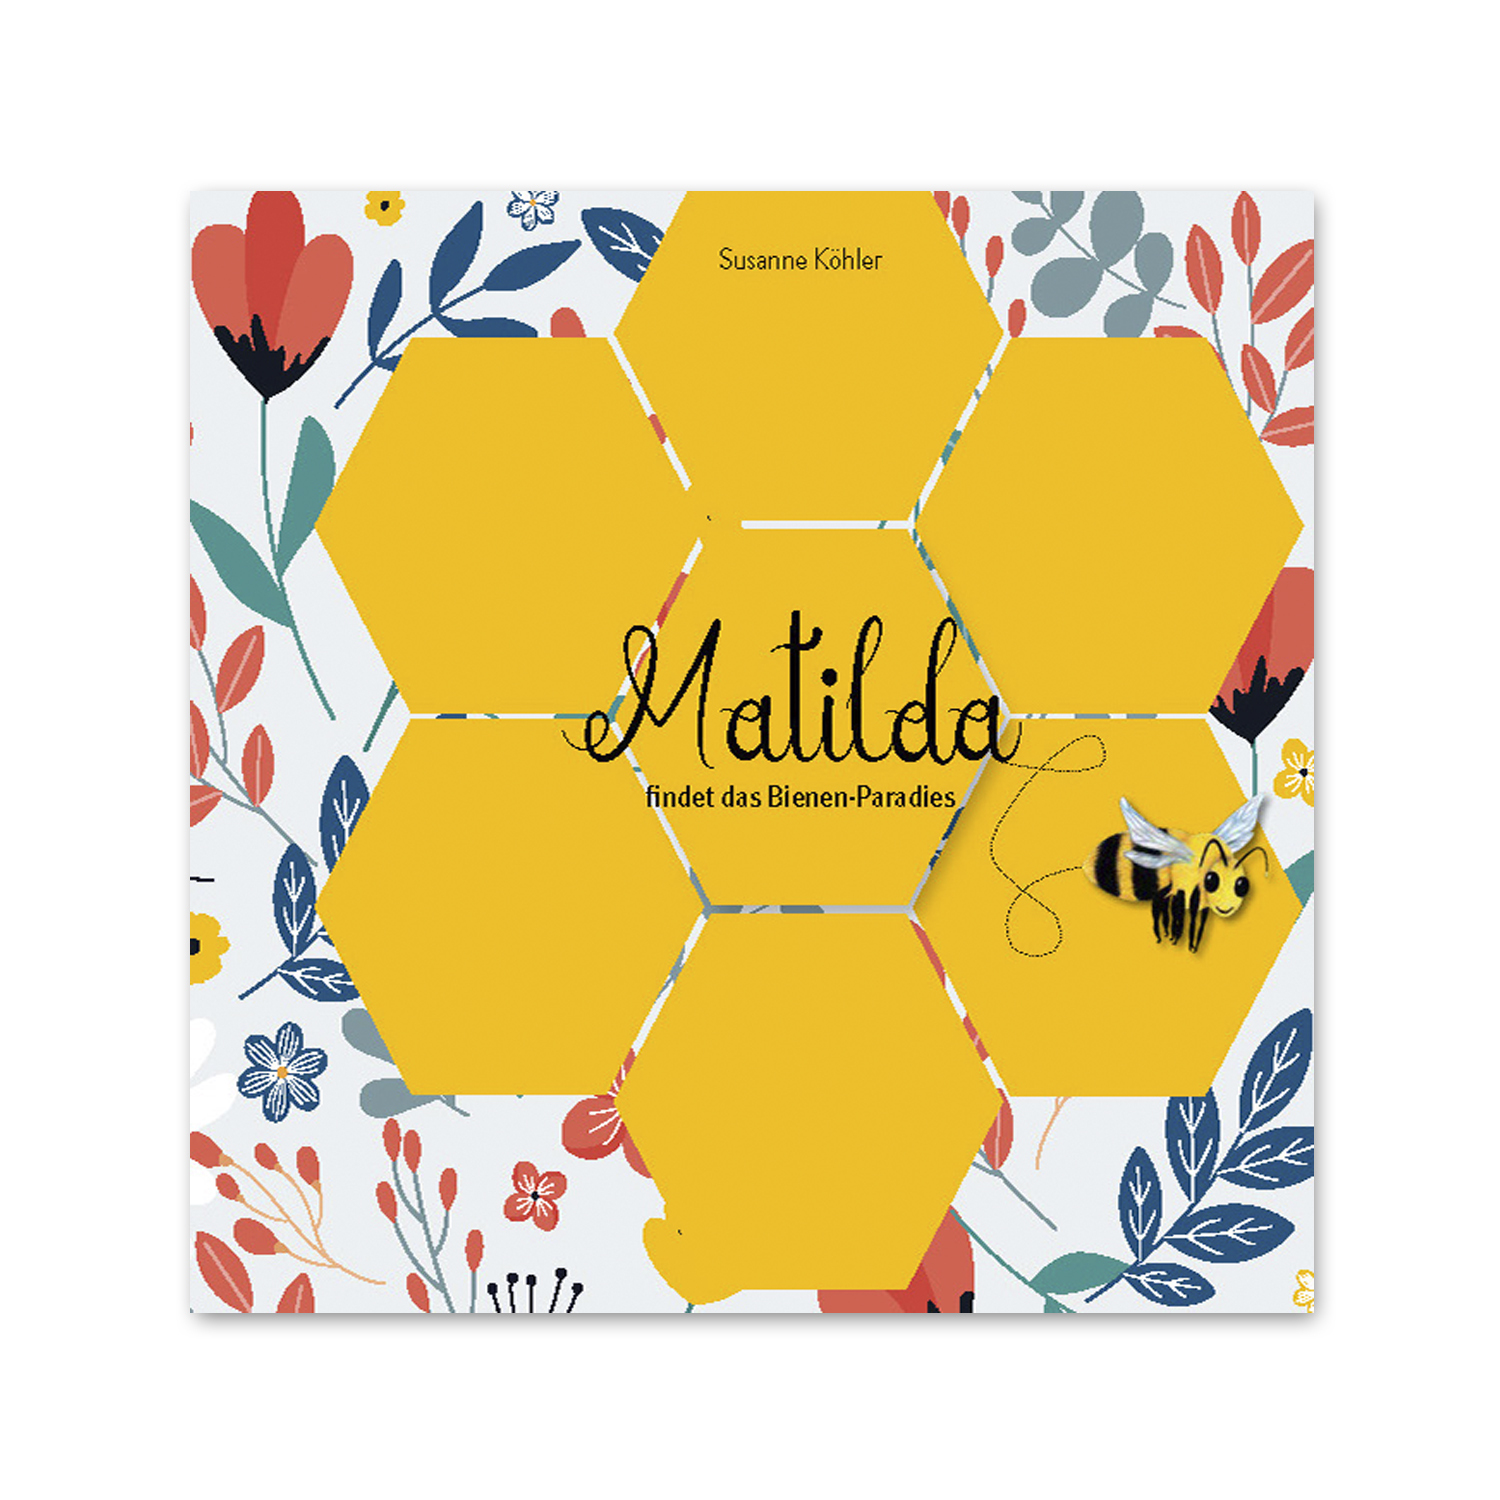 Matilda findet das Bienen-Paradies (Susanne Köhler)